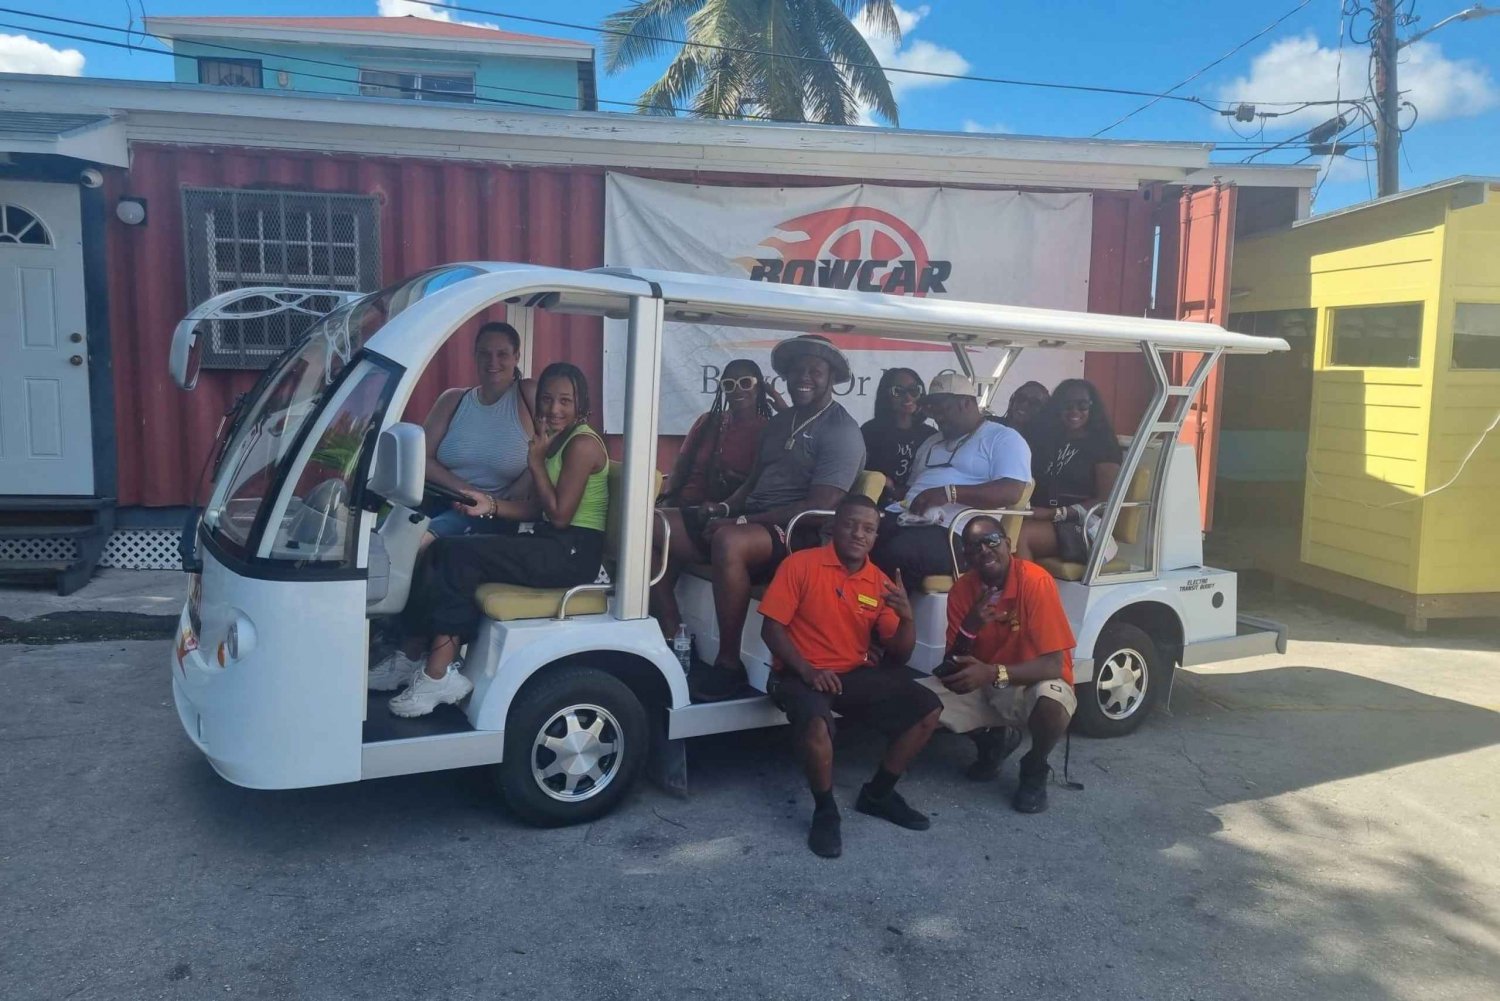 Nassau,Bahamas: Electric Bus Tour,local food & drink samples